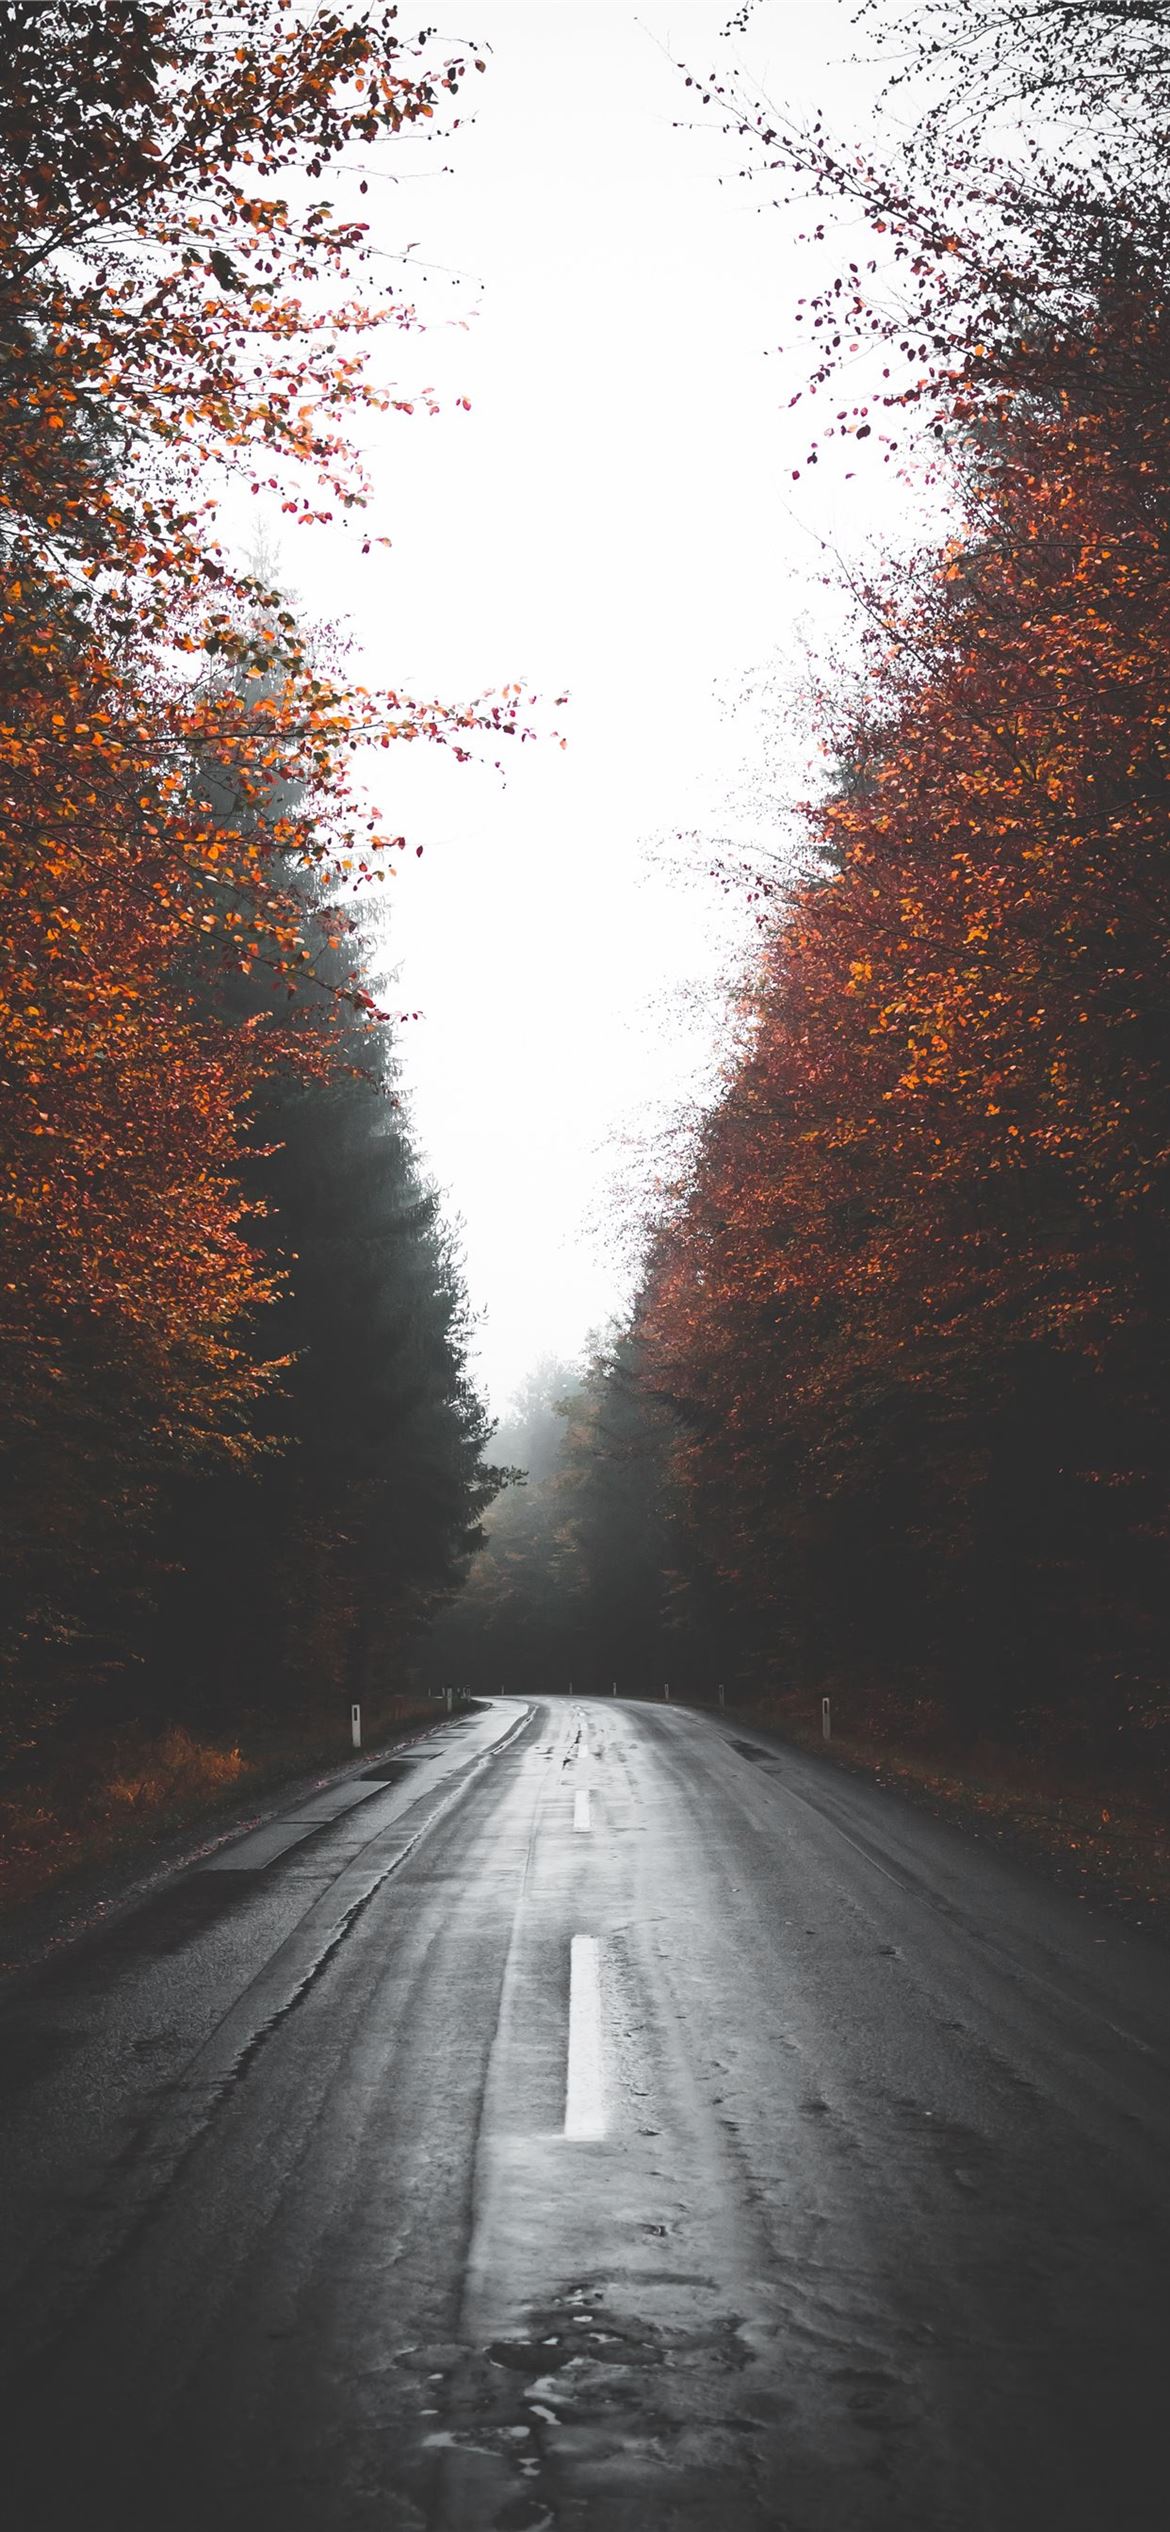 empty wet road between trees iPhone Wallpapers Free Download